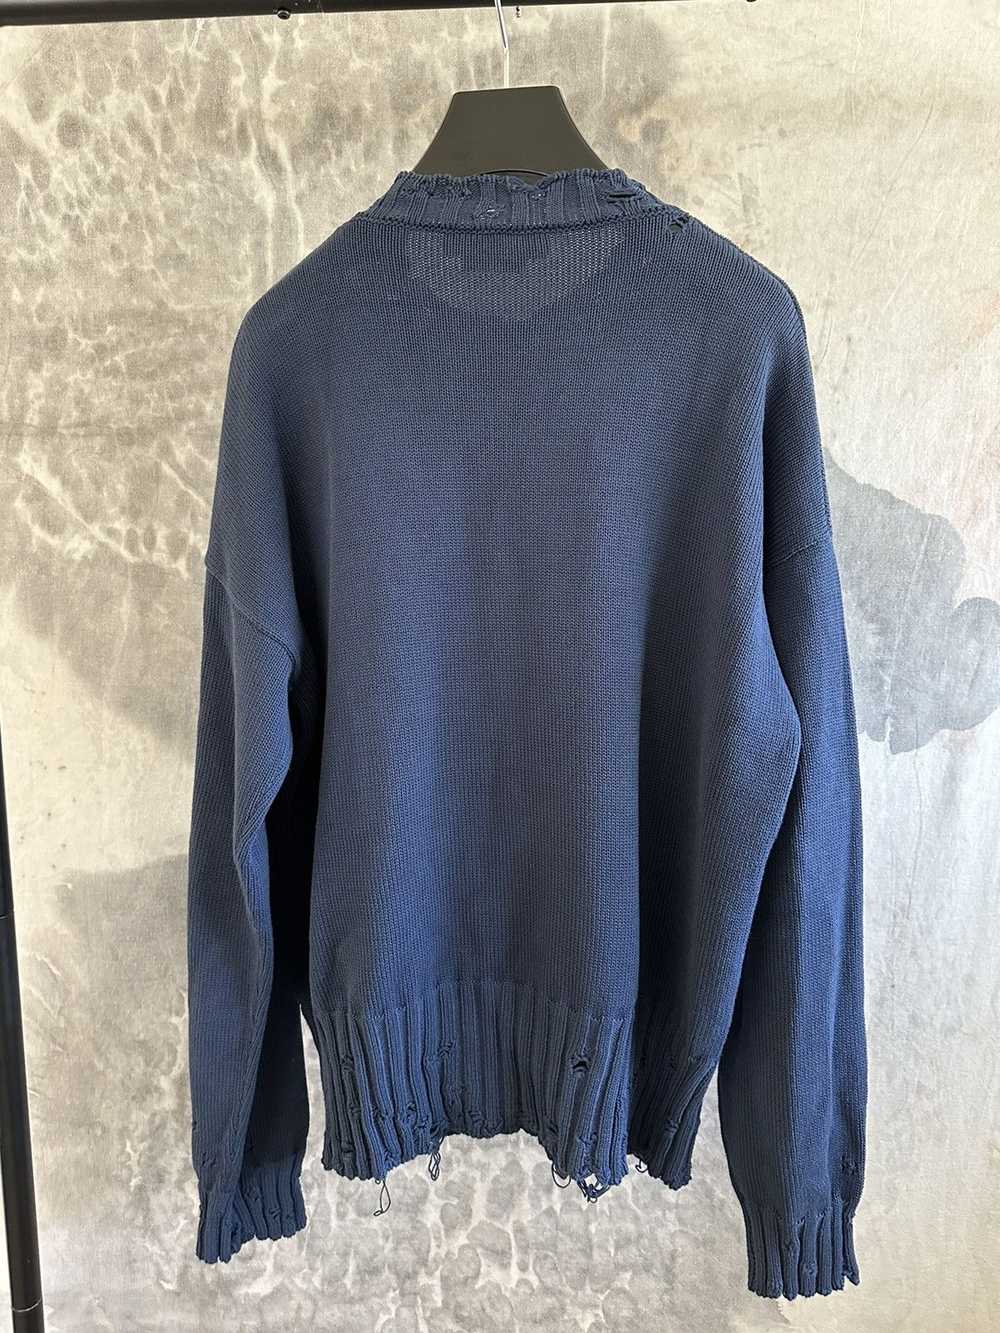 Marni Marni Distressed knit Sweater size 52 - image 3